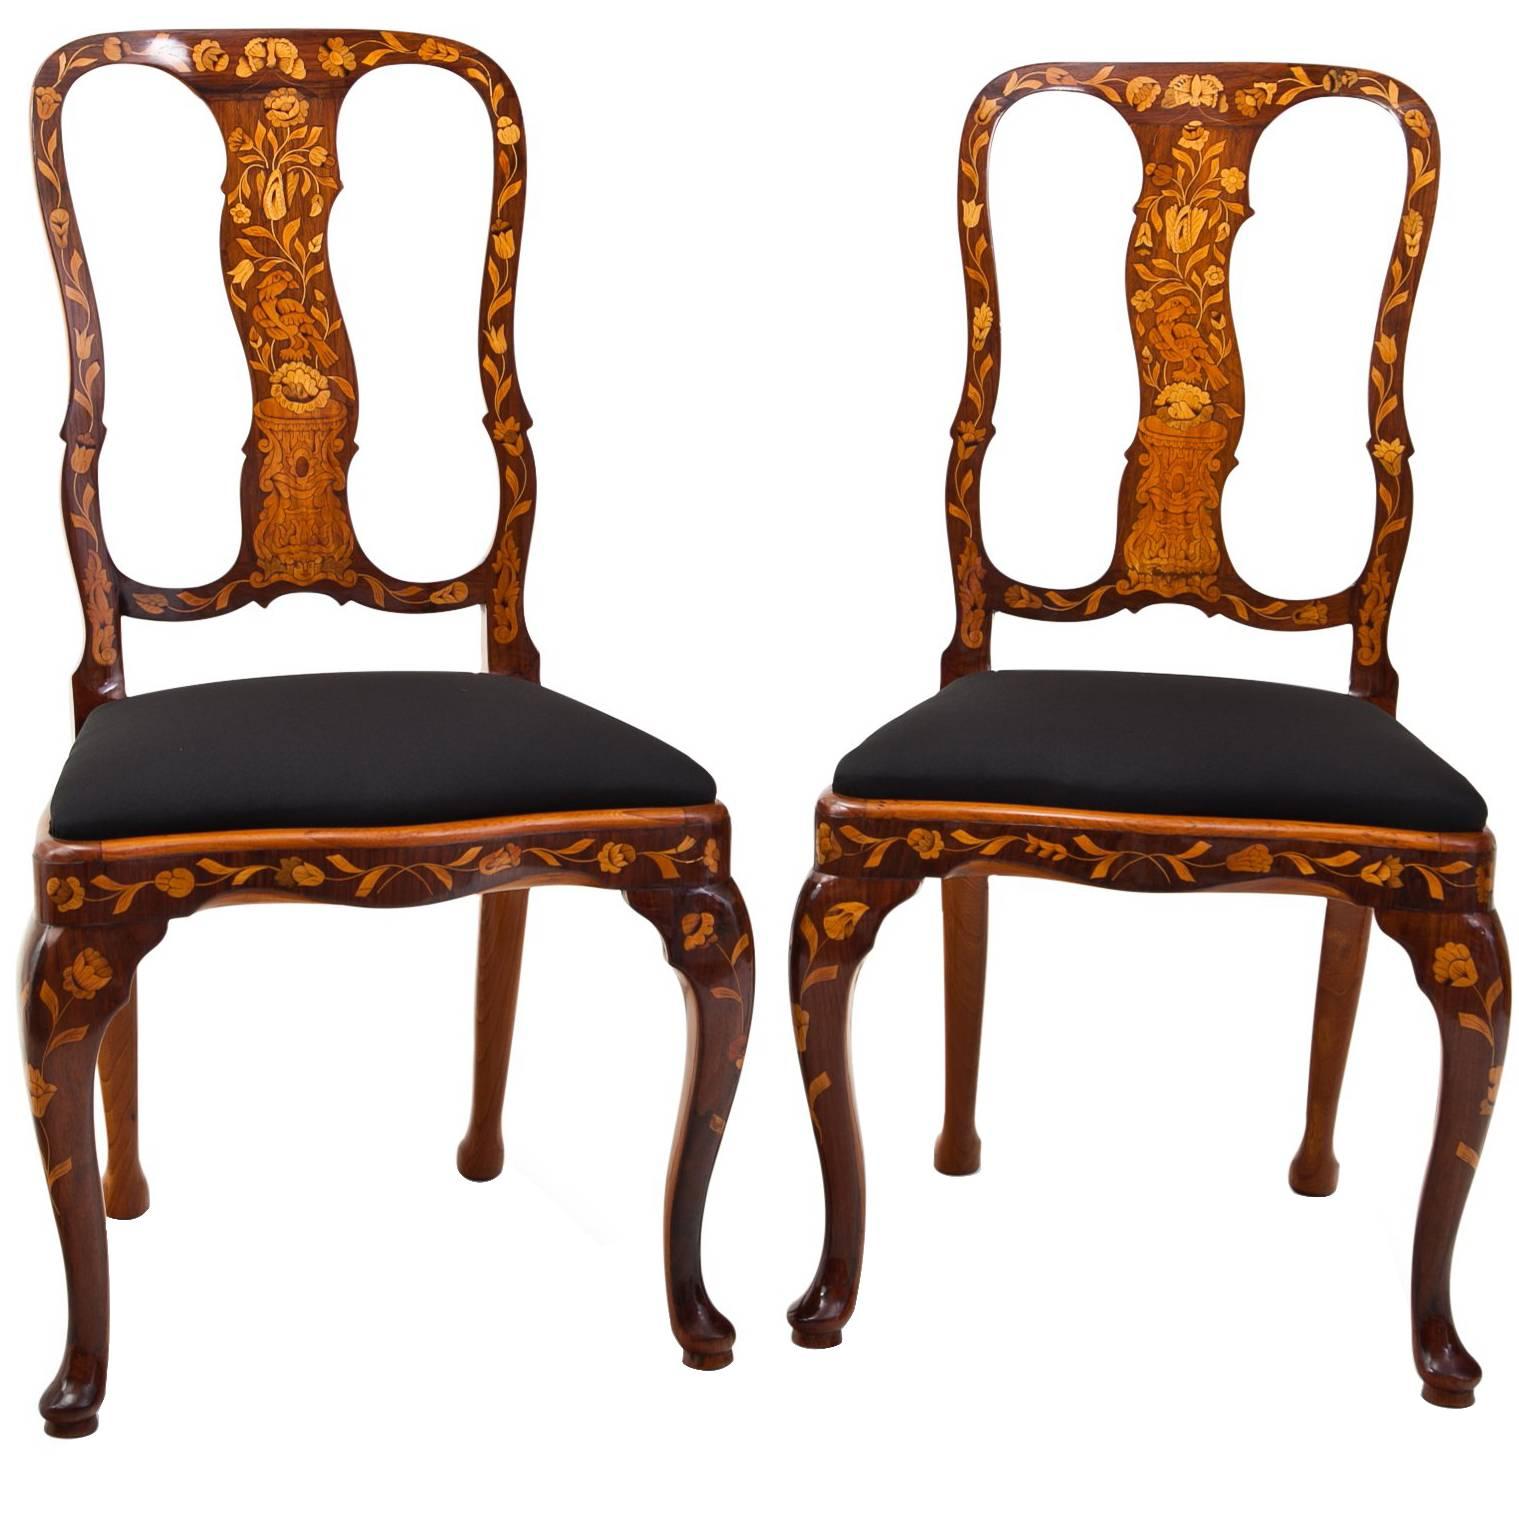 Dutch Baroque Chairs, 18th Century